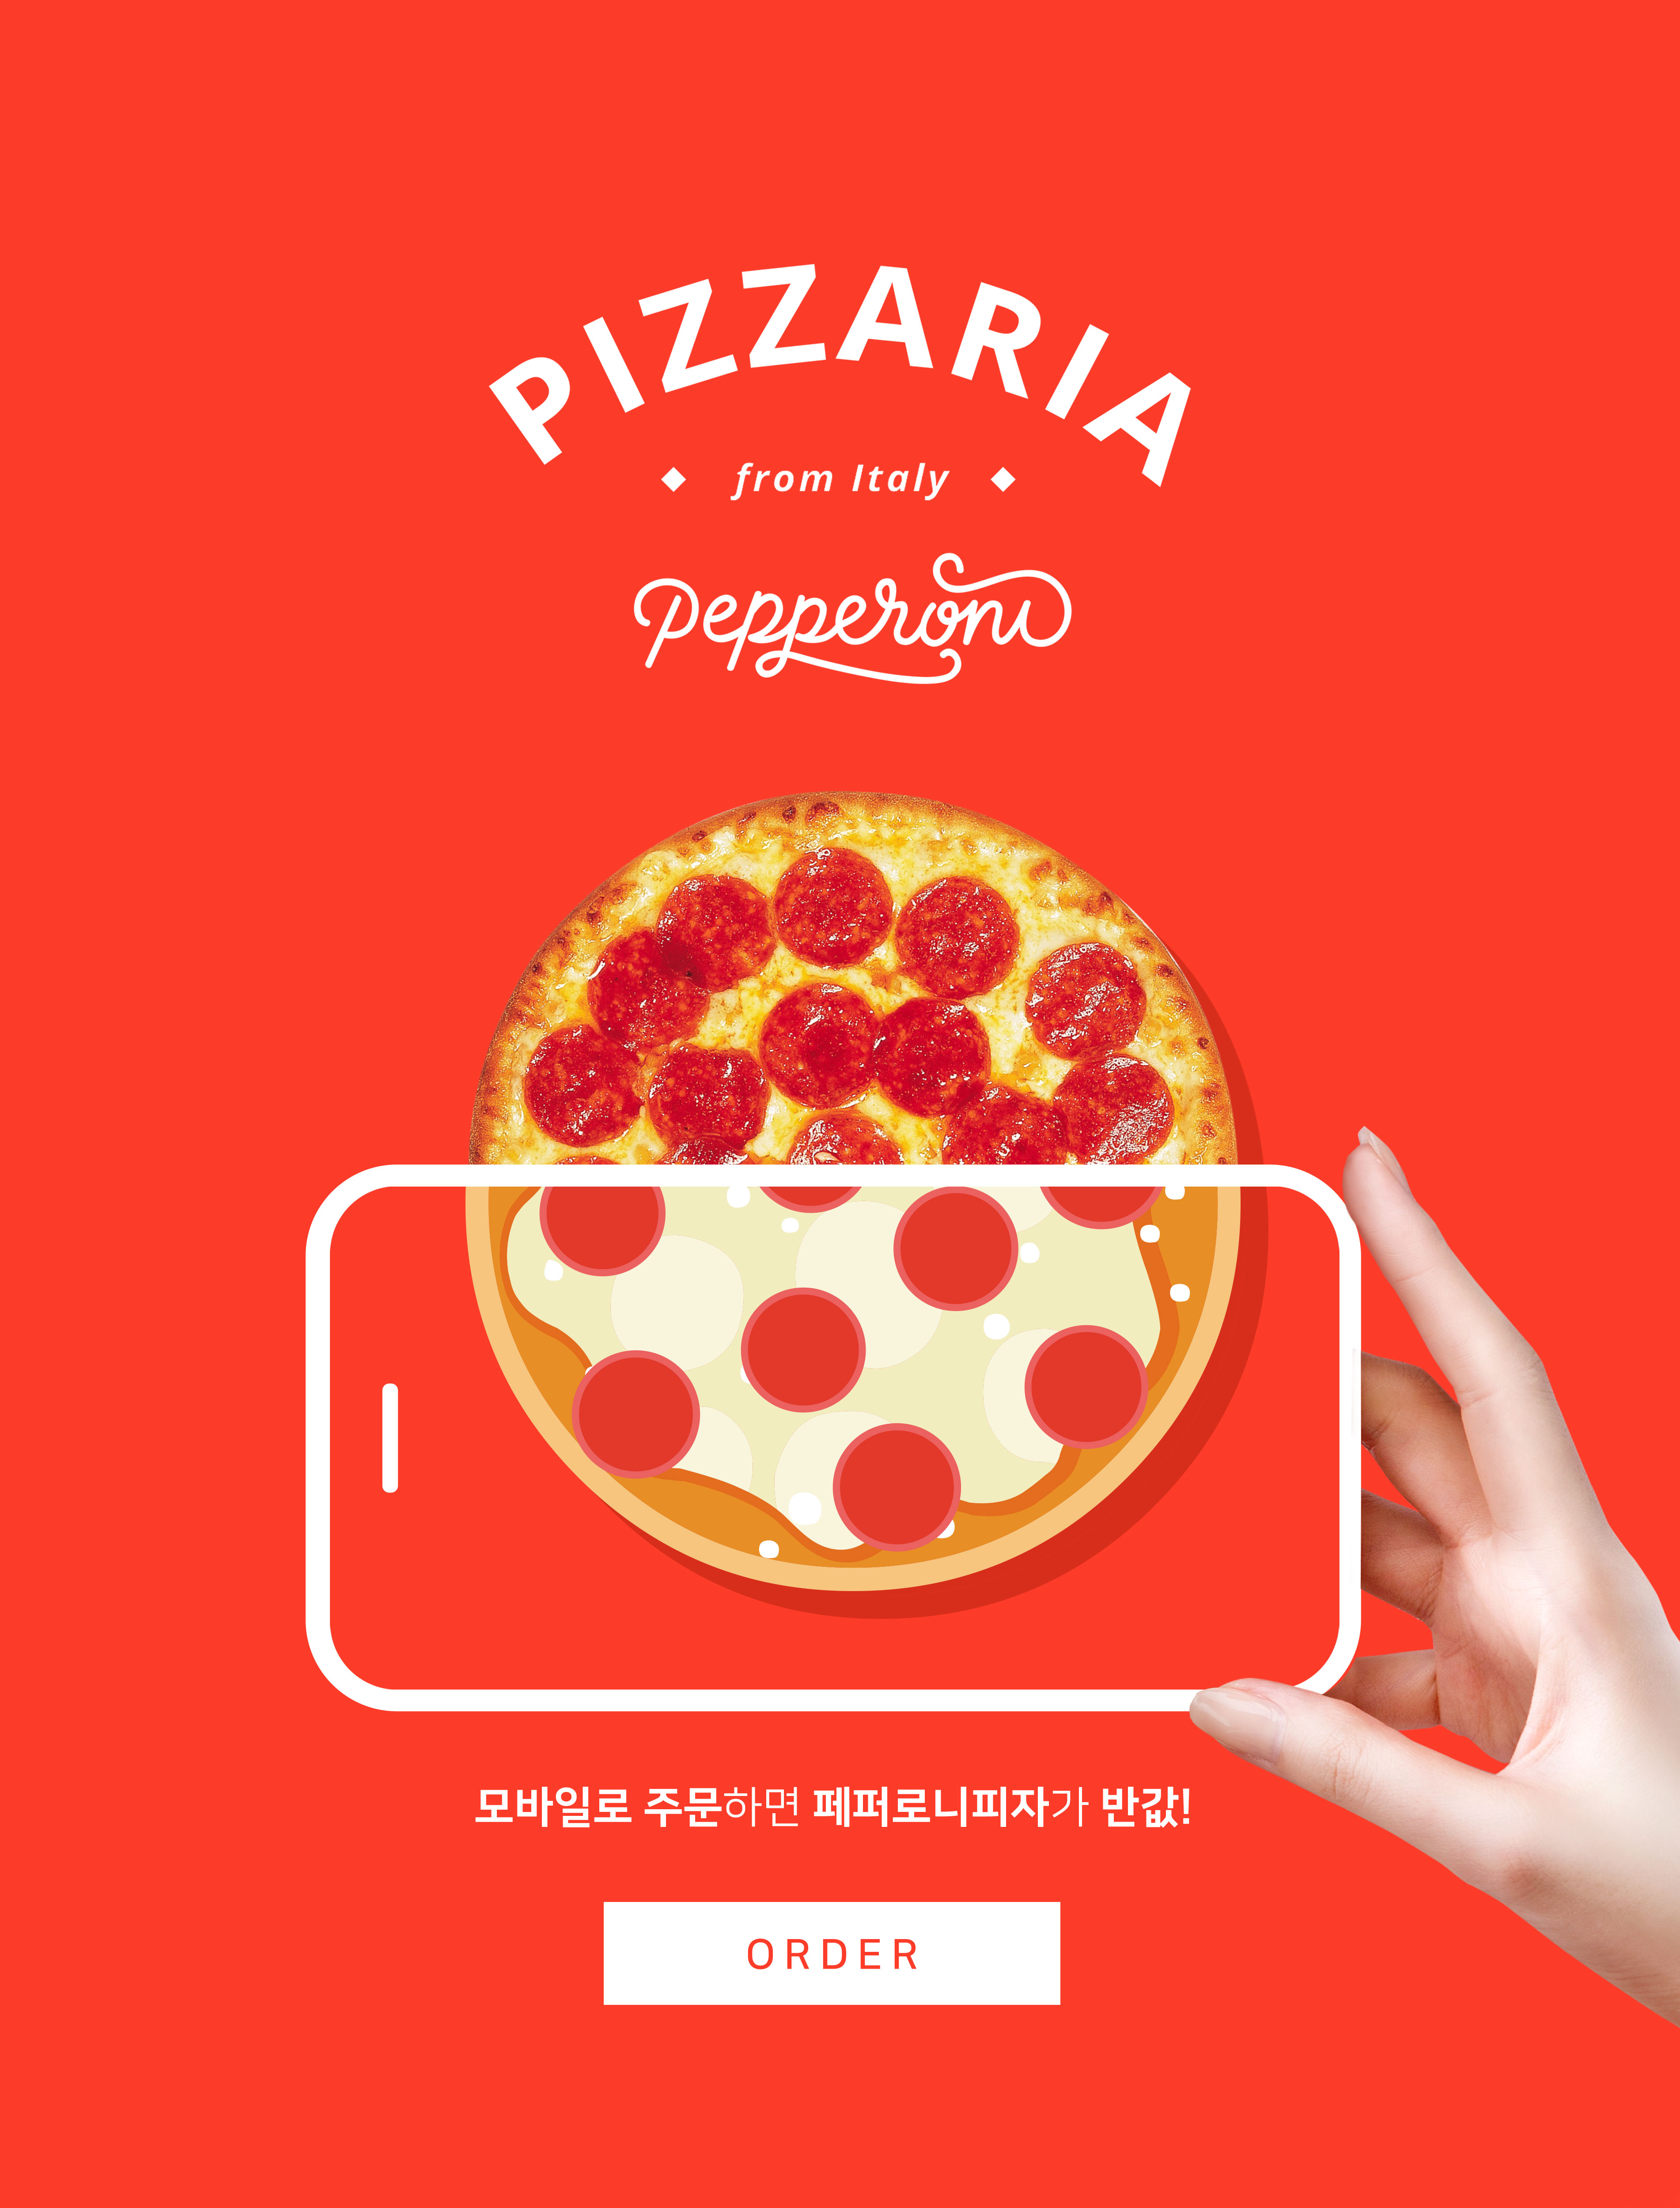 手机订购披萨半价活动宣传海报PSD素材16设计网精选素材插图